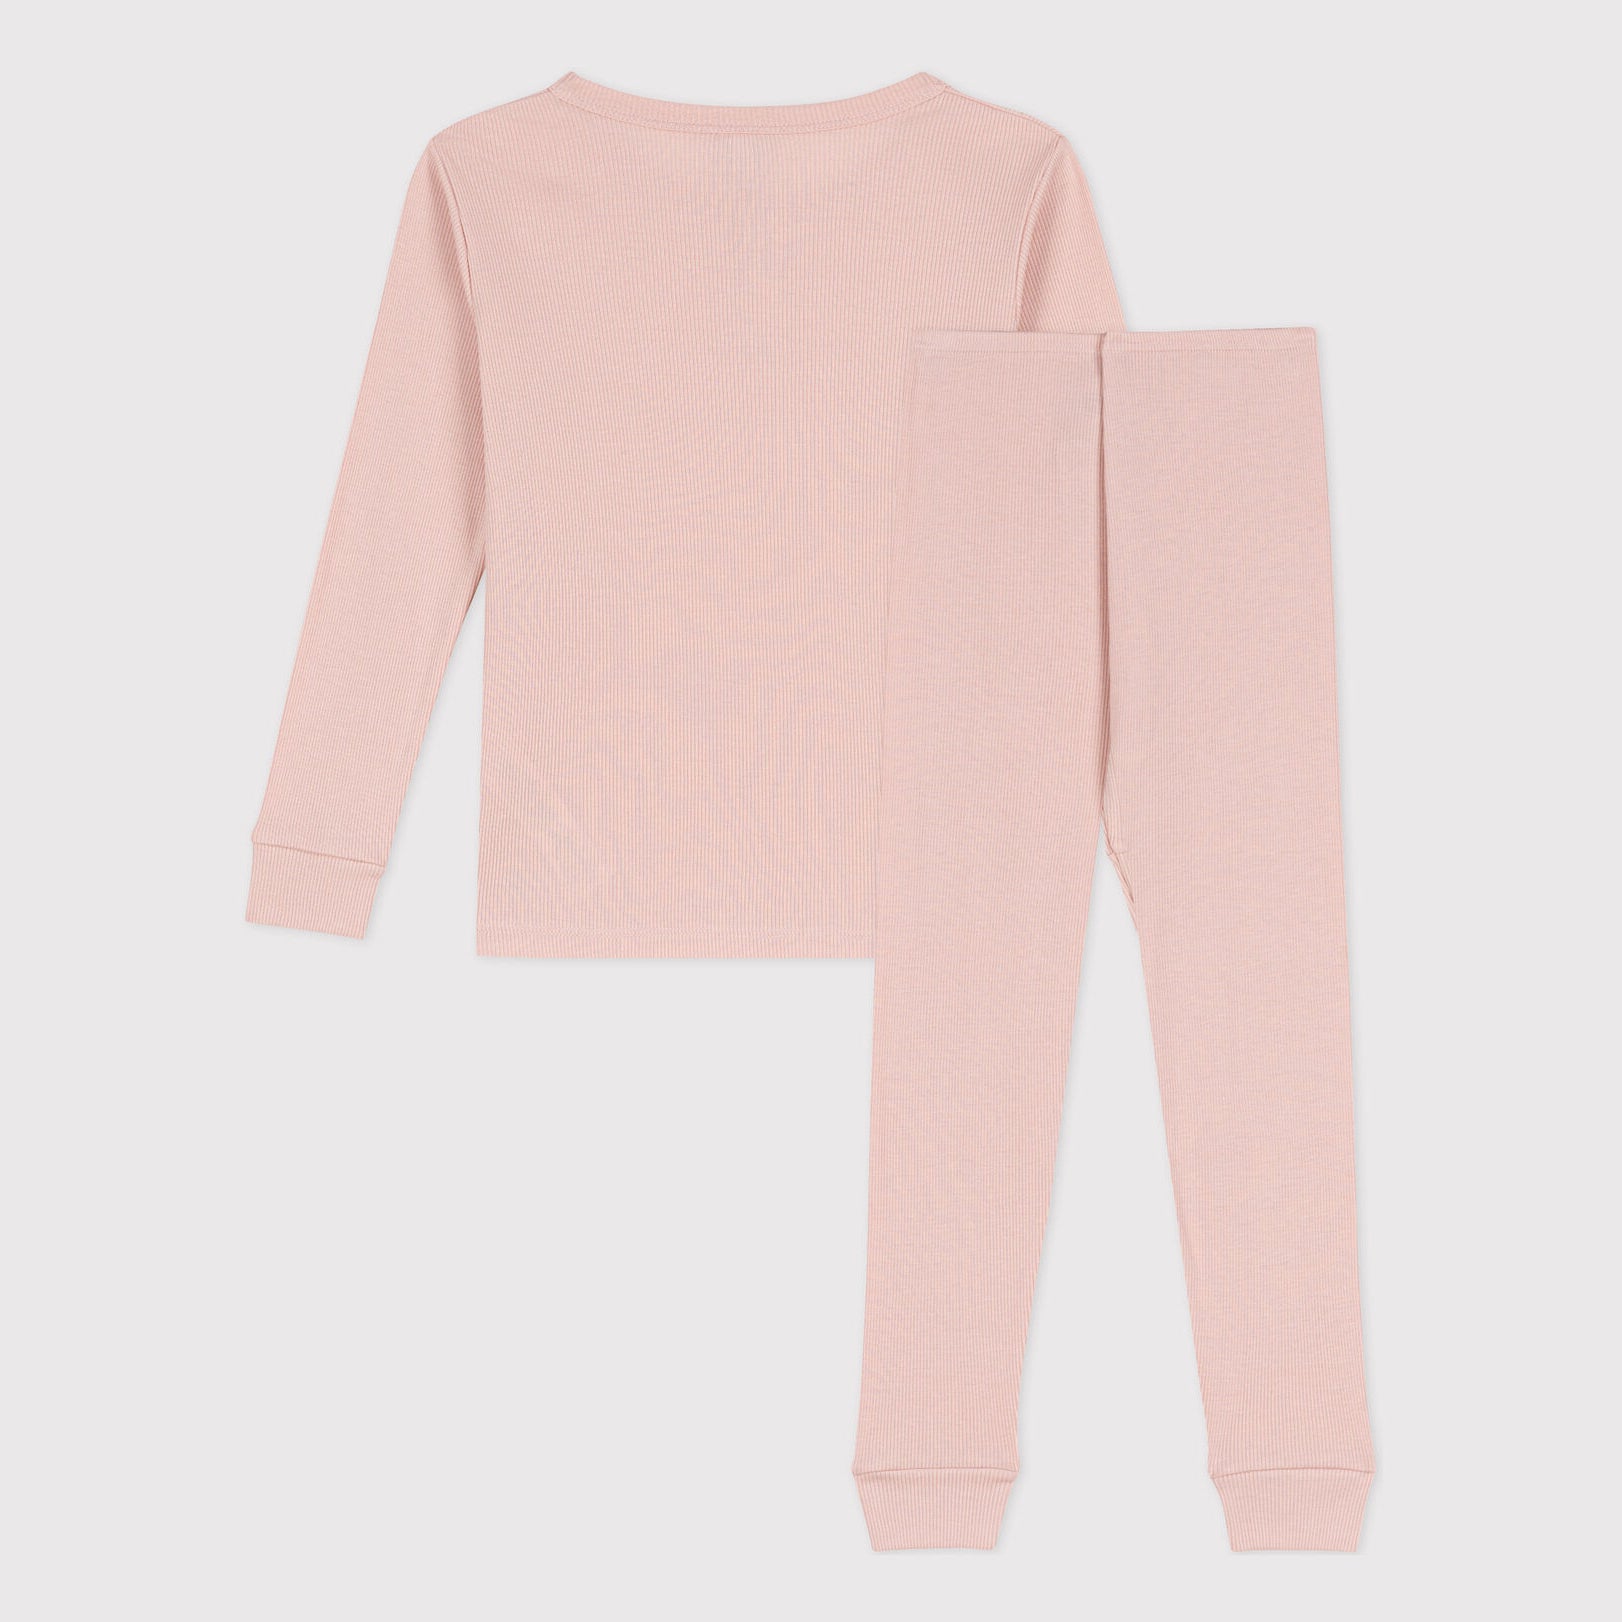 Girls Pink Nightwear Set